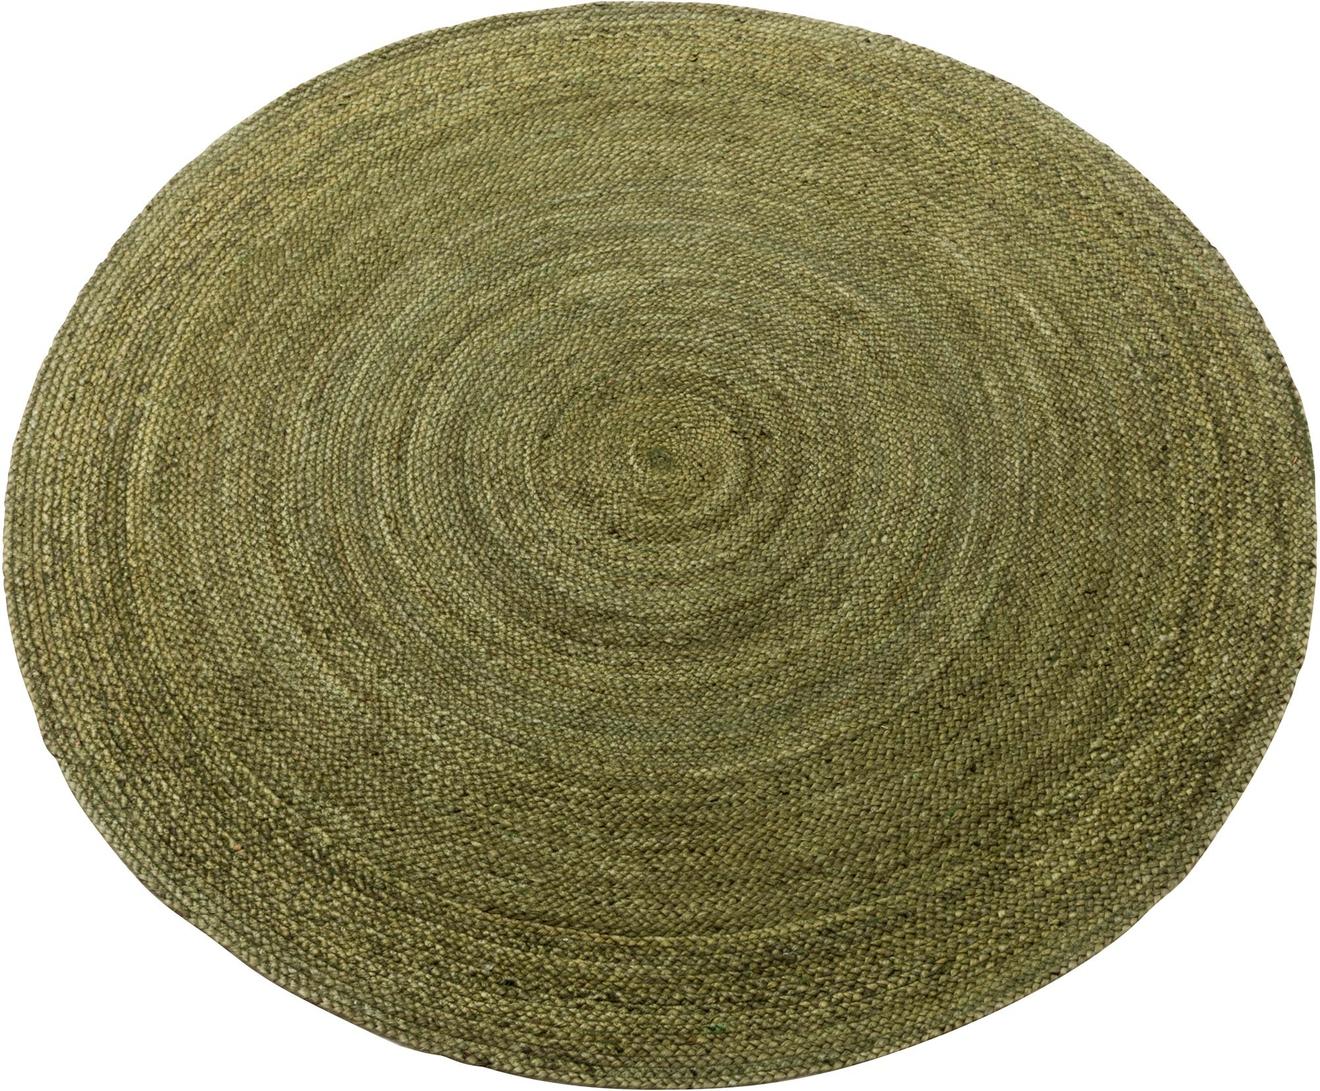 Kallio juuttimatto pyöreä ⌀ 90 cm, vihreä tuote hintaan 29€ liikkeestä MASKU